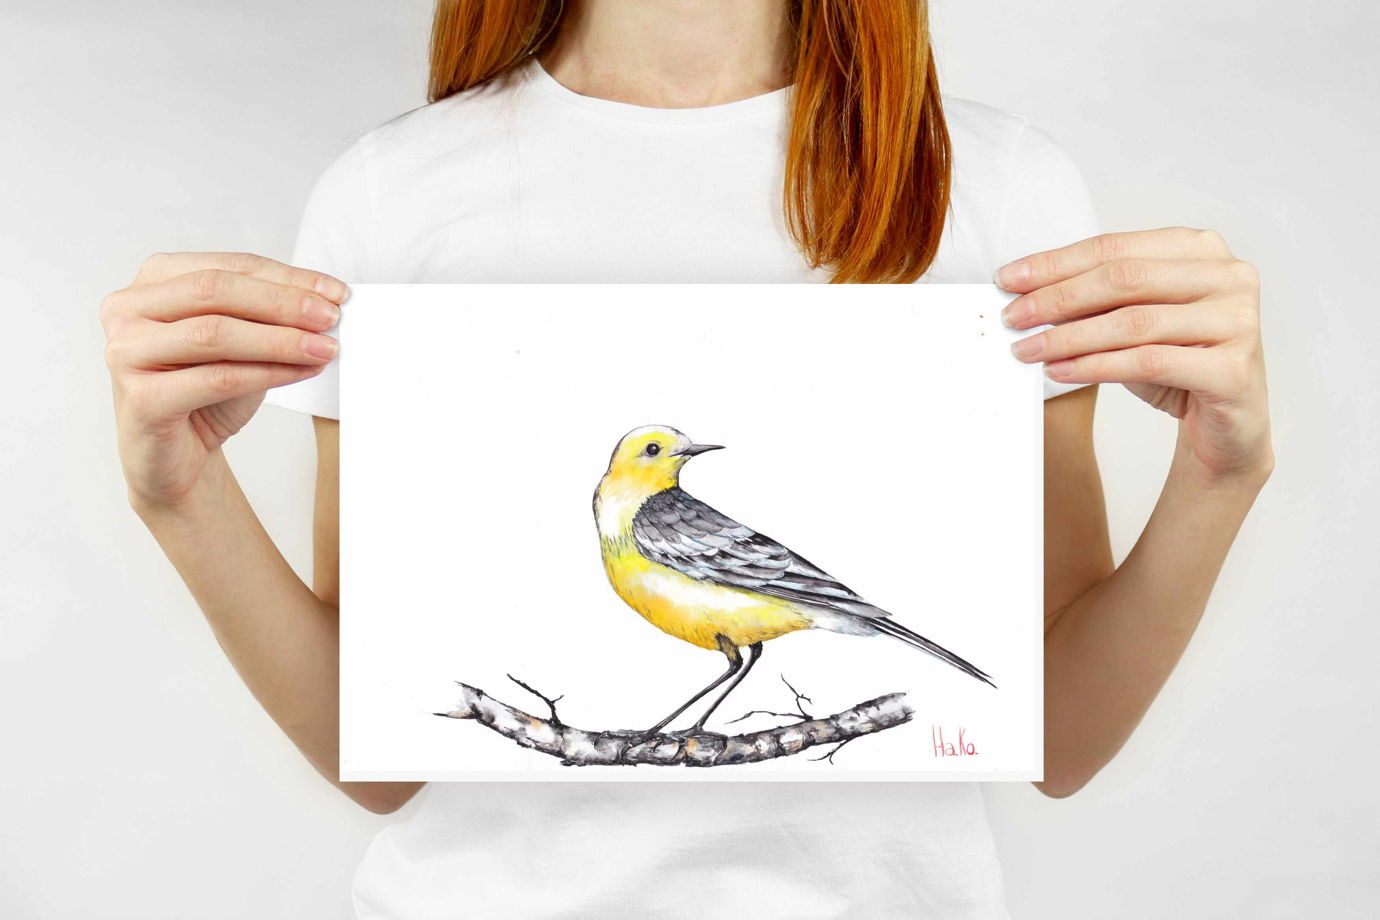 Лесная птичка желтоголовая трясогузка на березовой ветке. Акварельная иллюстрация. Формат А4.